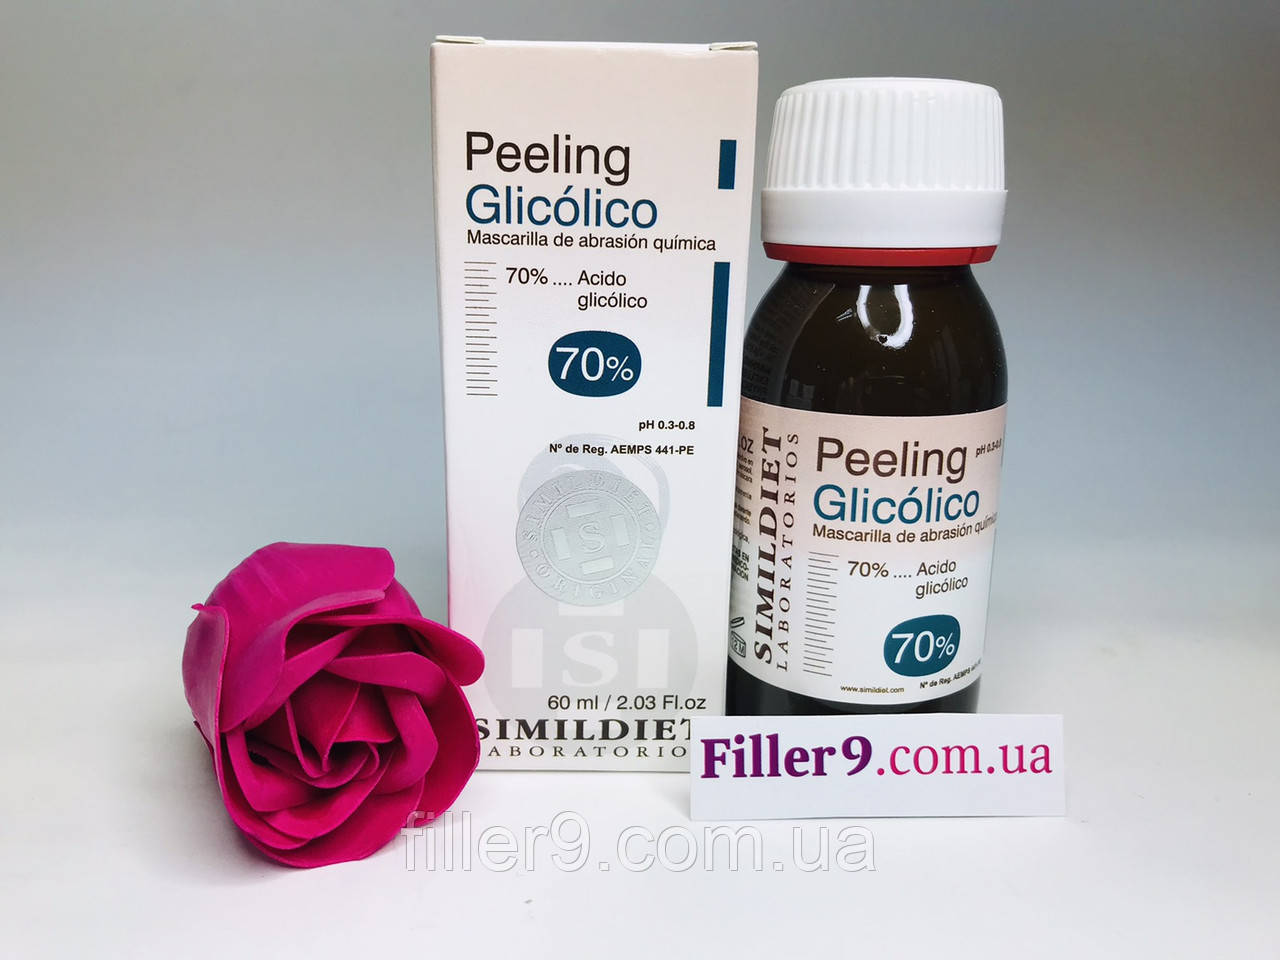 Simildiet Glicolico Peeling Гліколевий пілінг (пігментація, рубці, розтяжки, омолодження, гіперкератоз), 60 мл